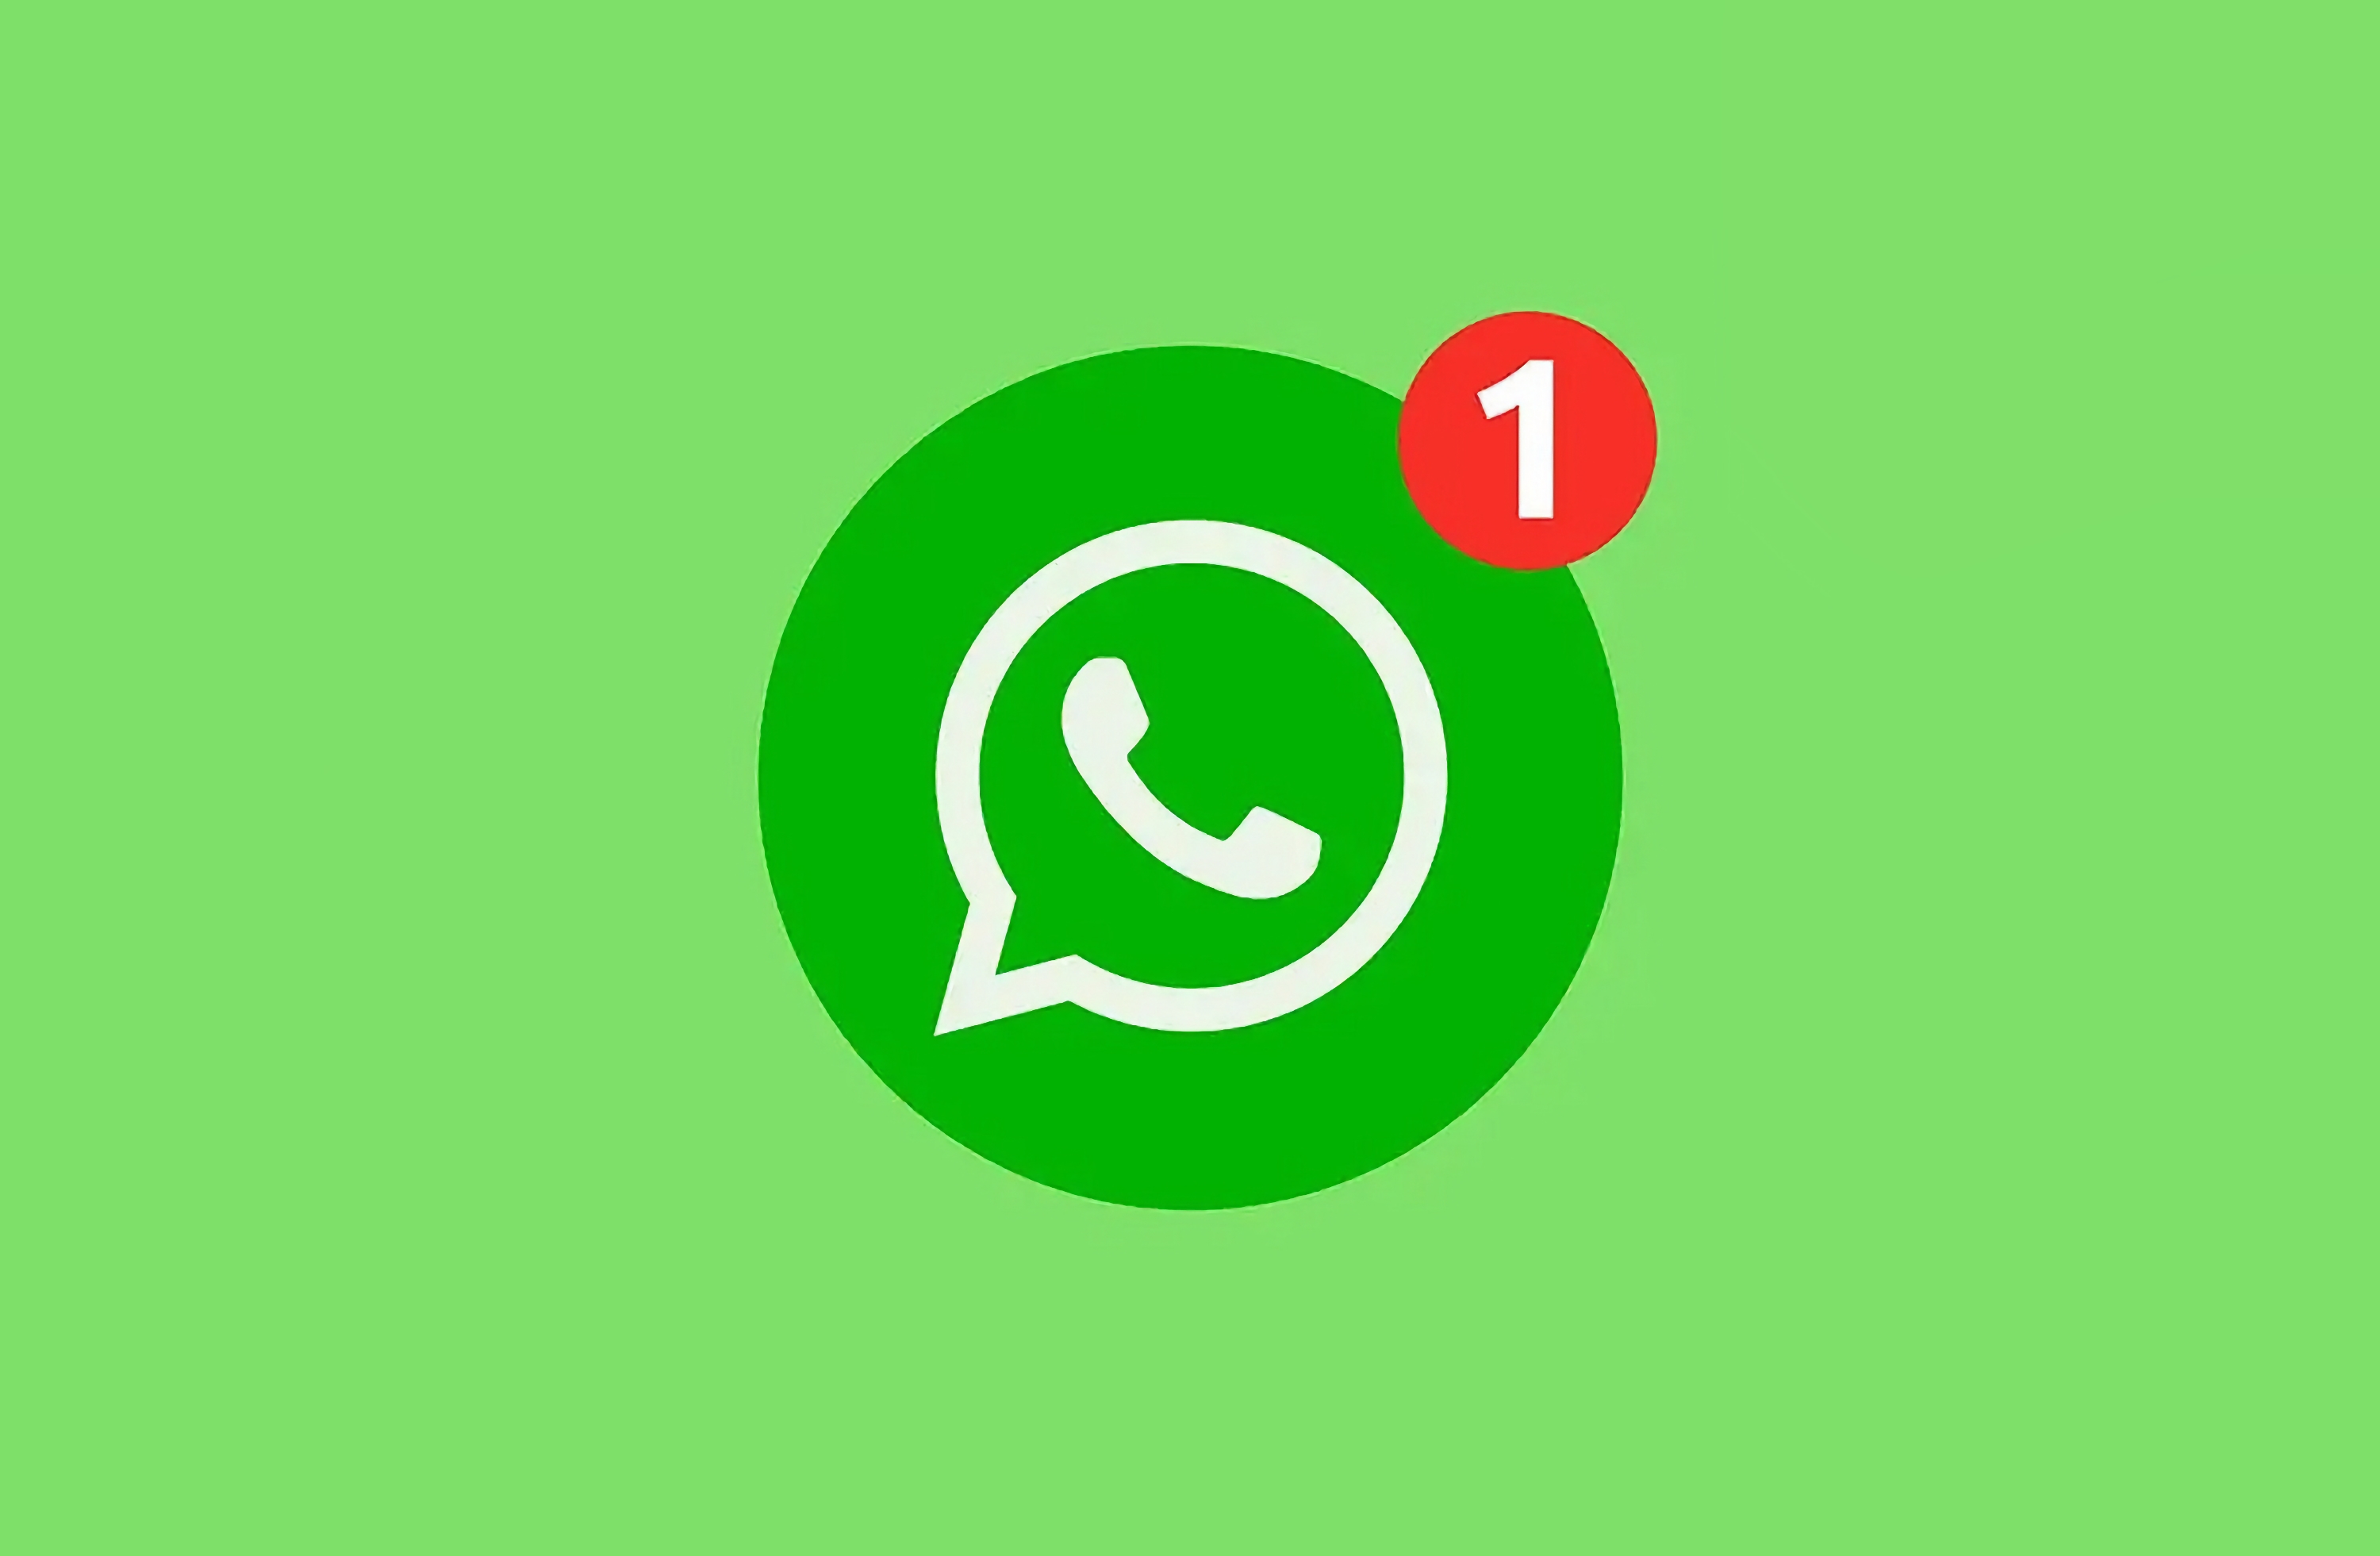 Los usuarios de WhatsApp podrán transferir el historial de chats al nuevo iPhone sin iCloud